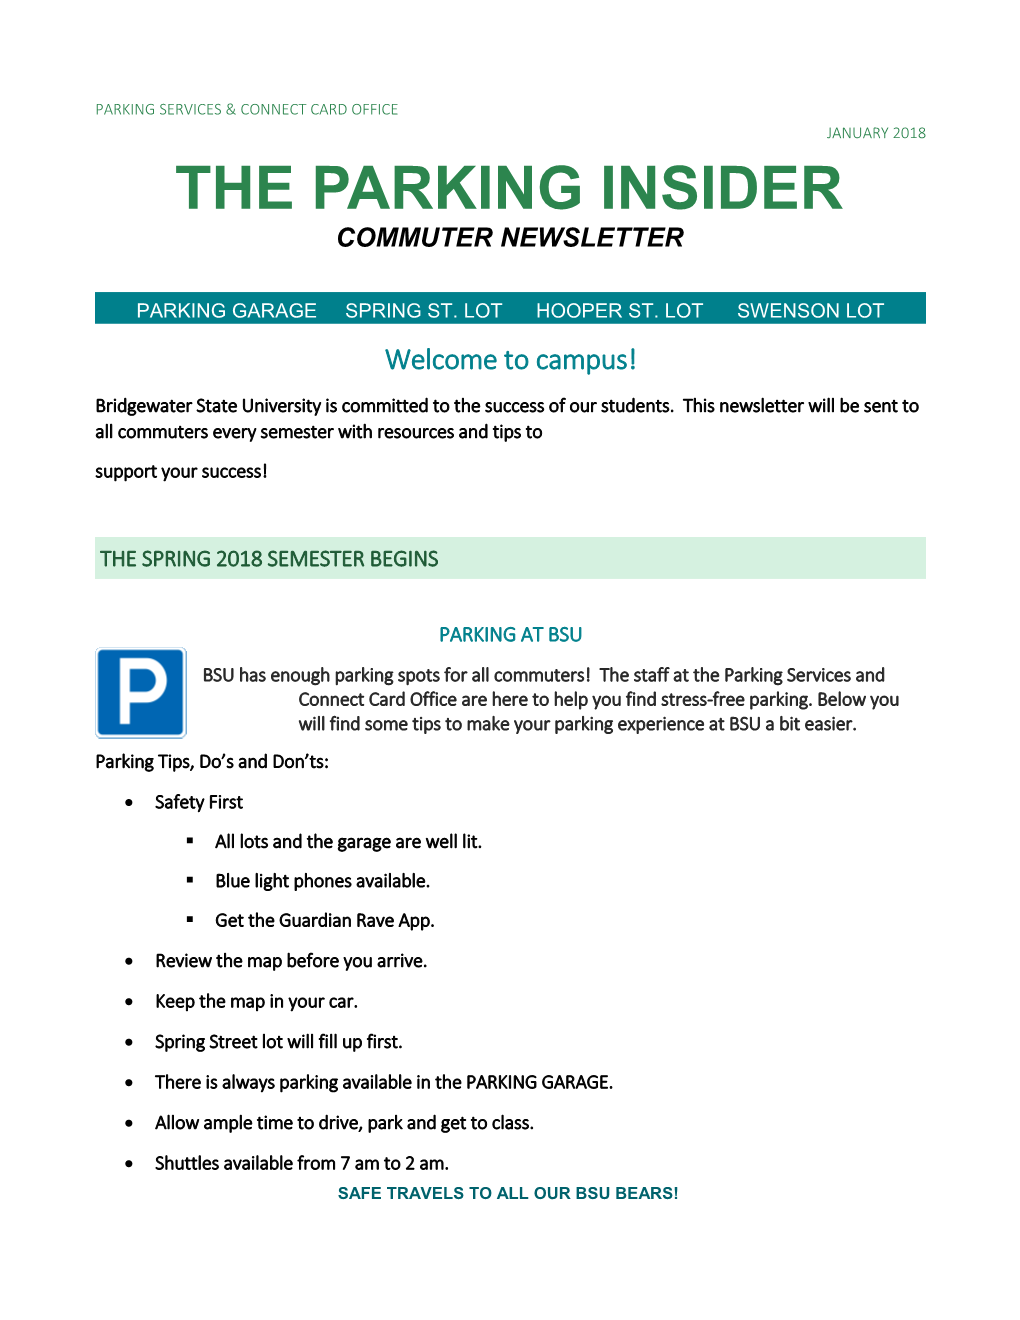 The Parking Insider-Commuter Newletter